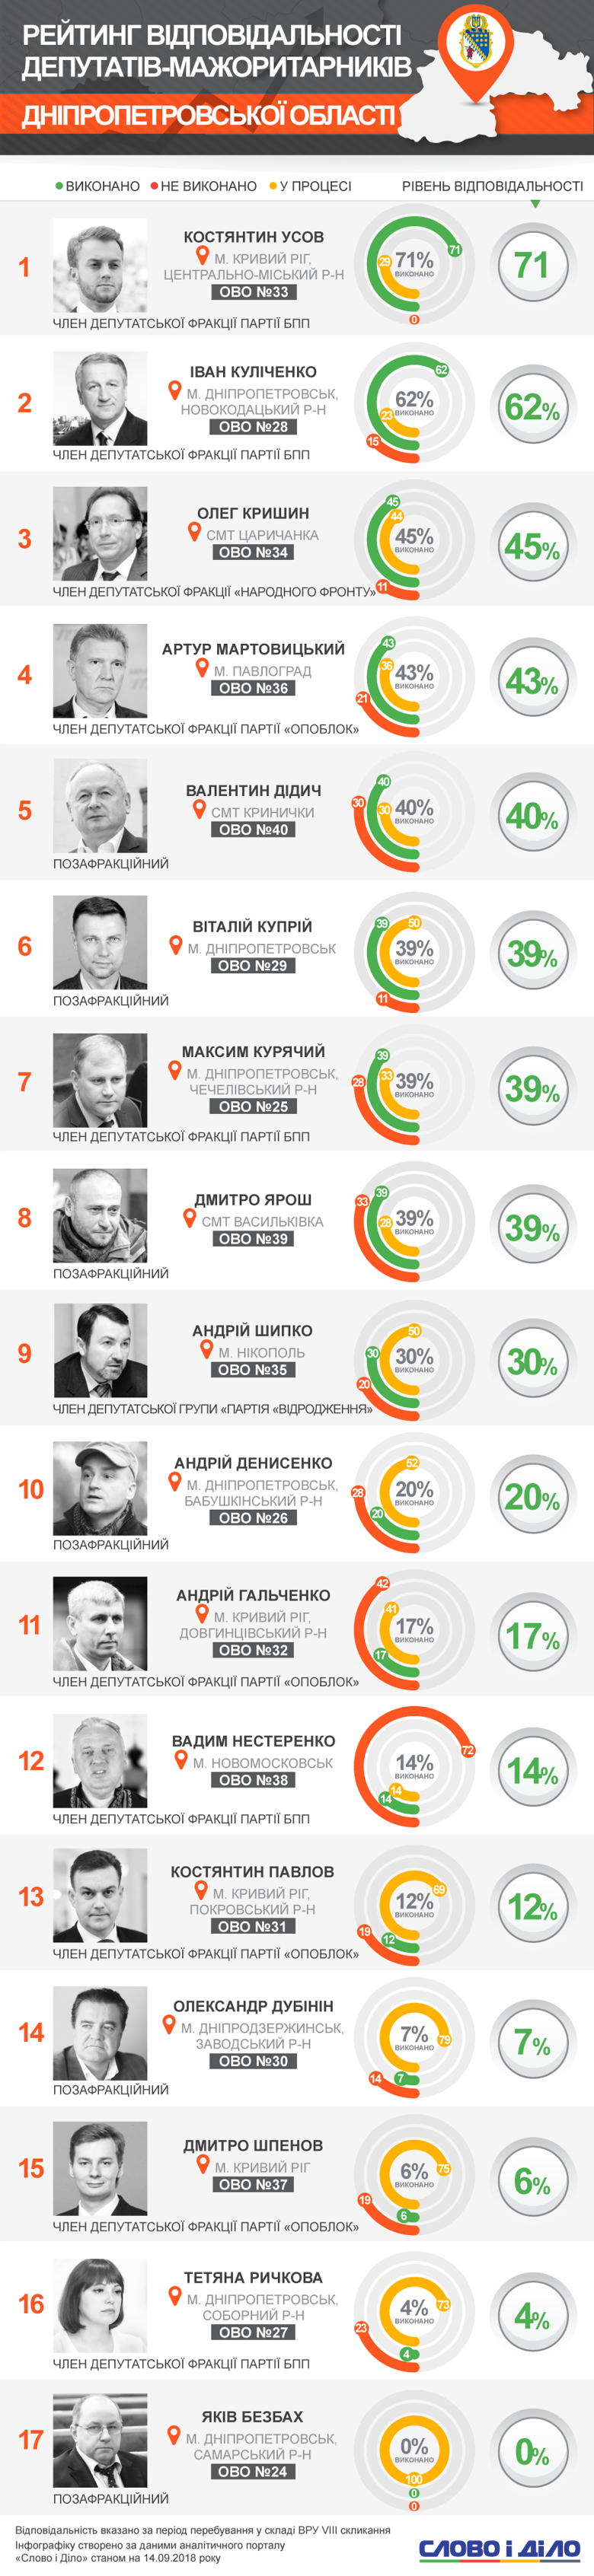 Усов, Куліченко, Кришин виконали найбільше обіцянок, а Дубінін, Шпенов, Ричкова та Безбах не впоралися навіть з 10% зобов’язань.